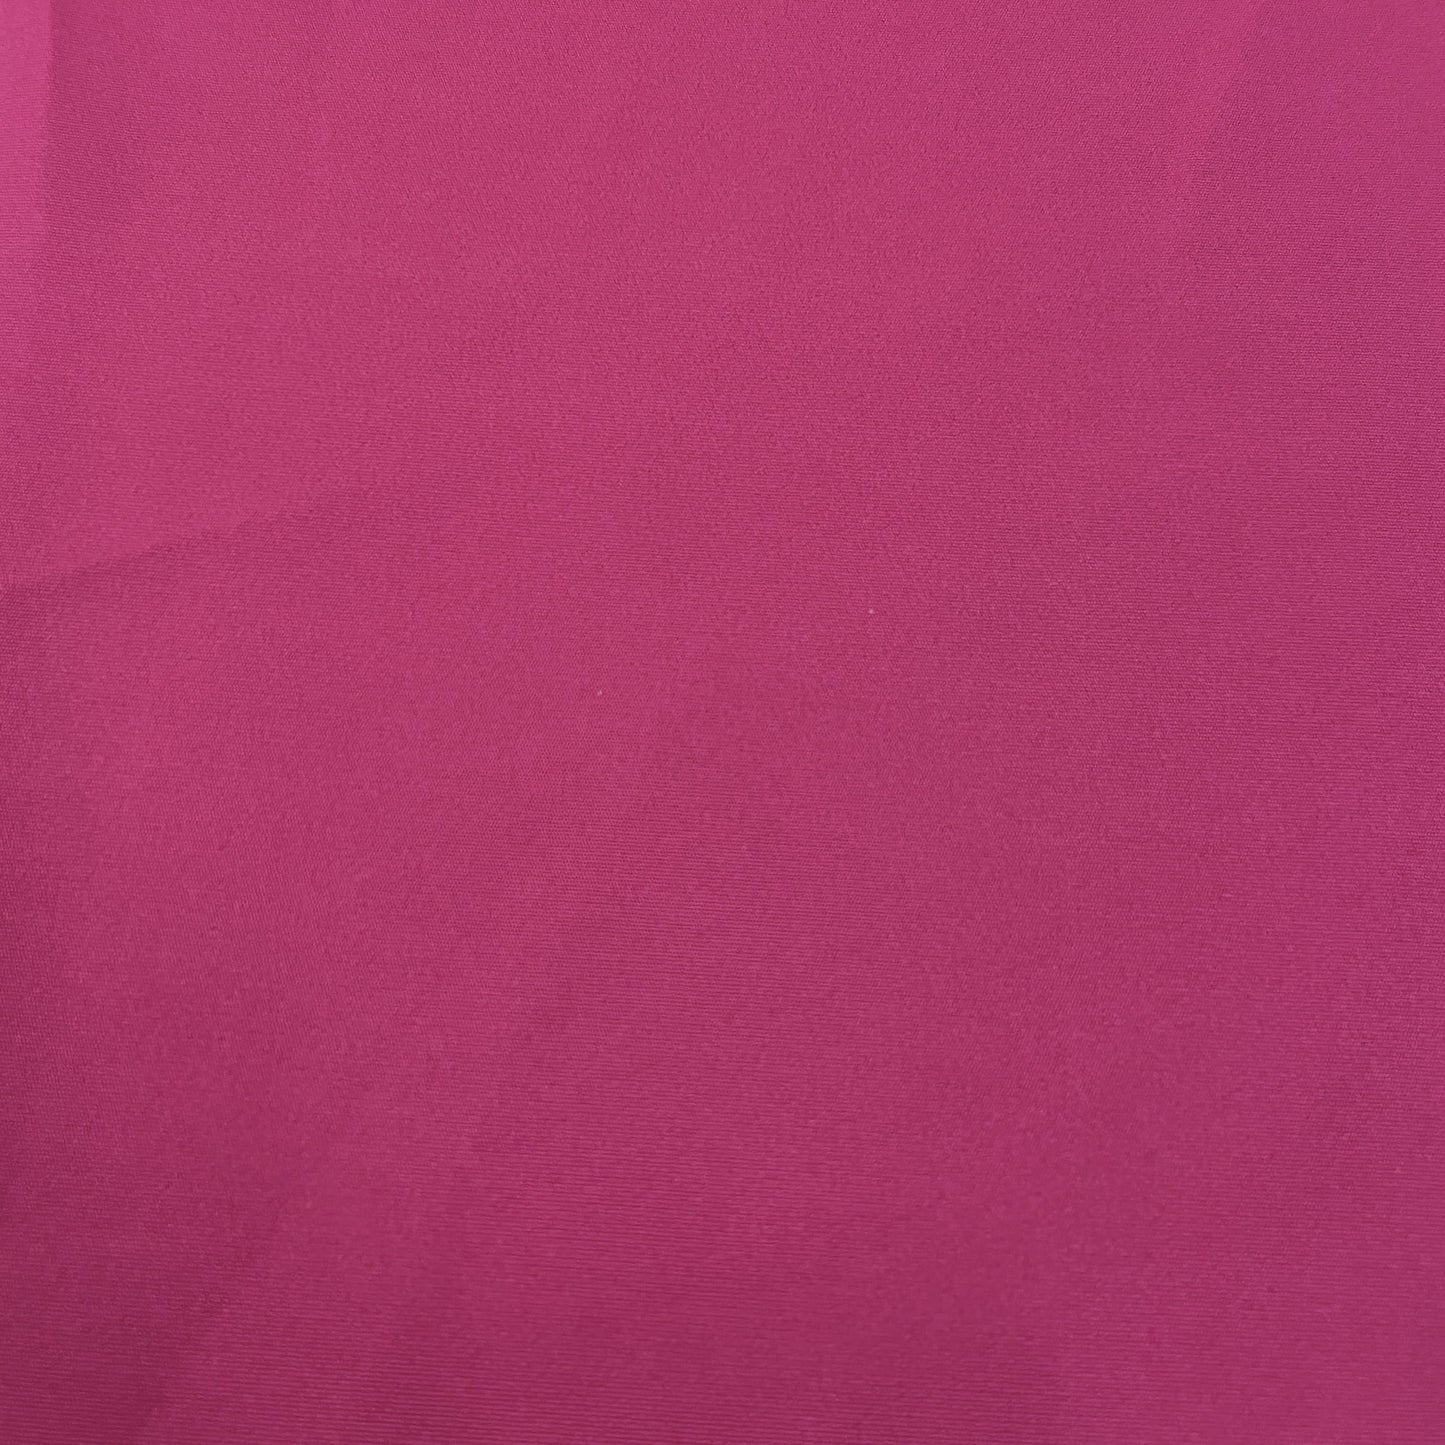 Premium Magenta Pink Solid Banana Crepe Fabric